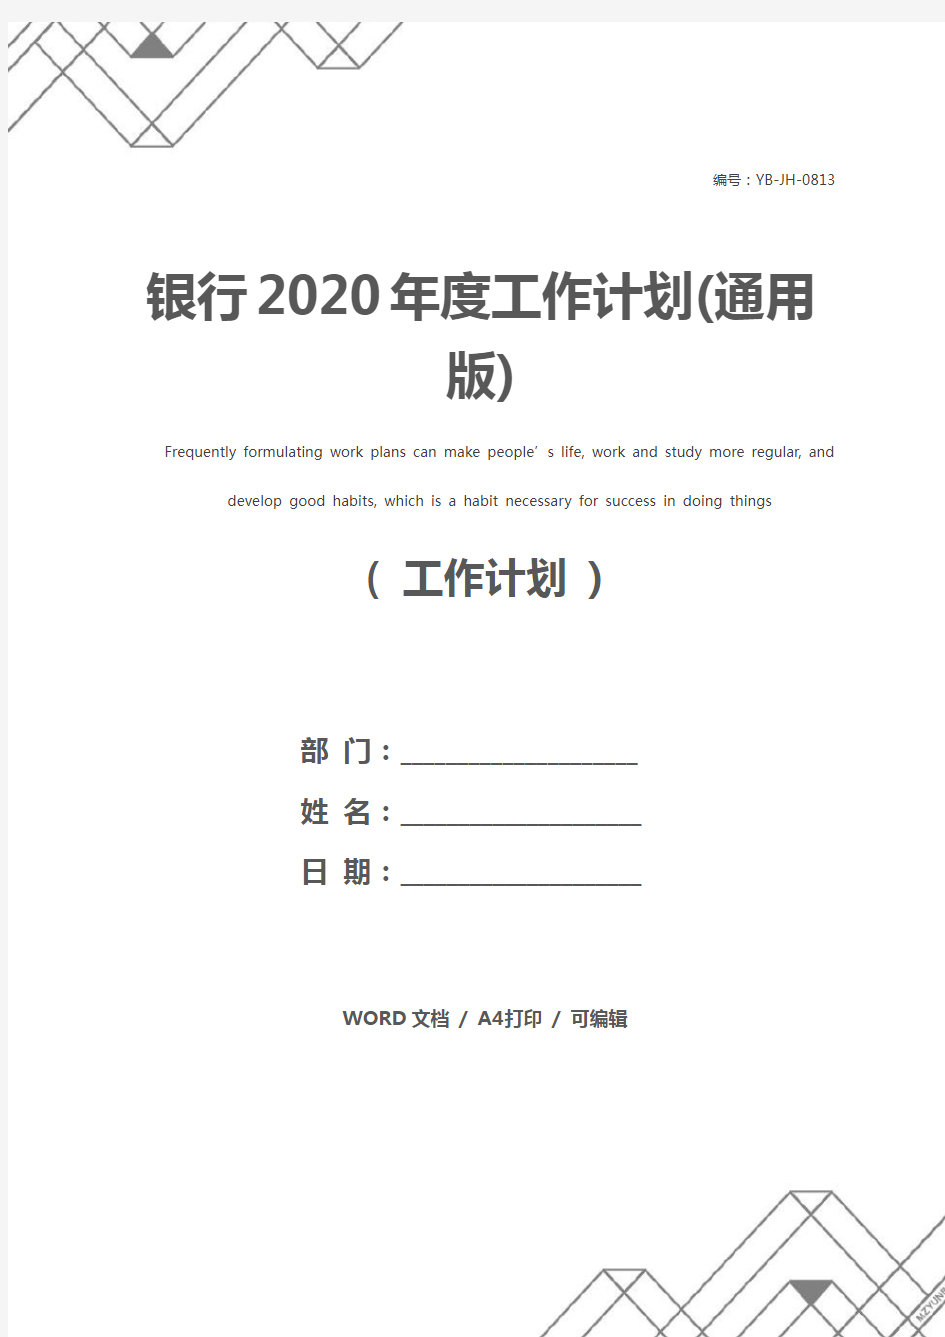 银行2020年度工作计划(通用版)